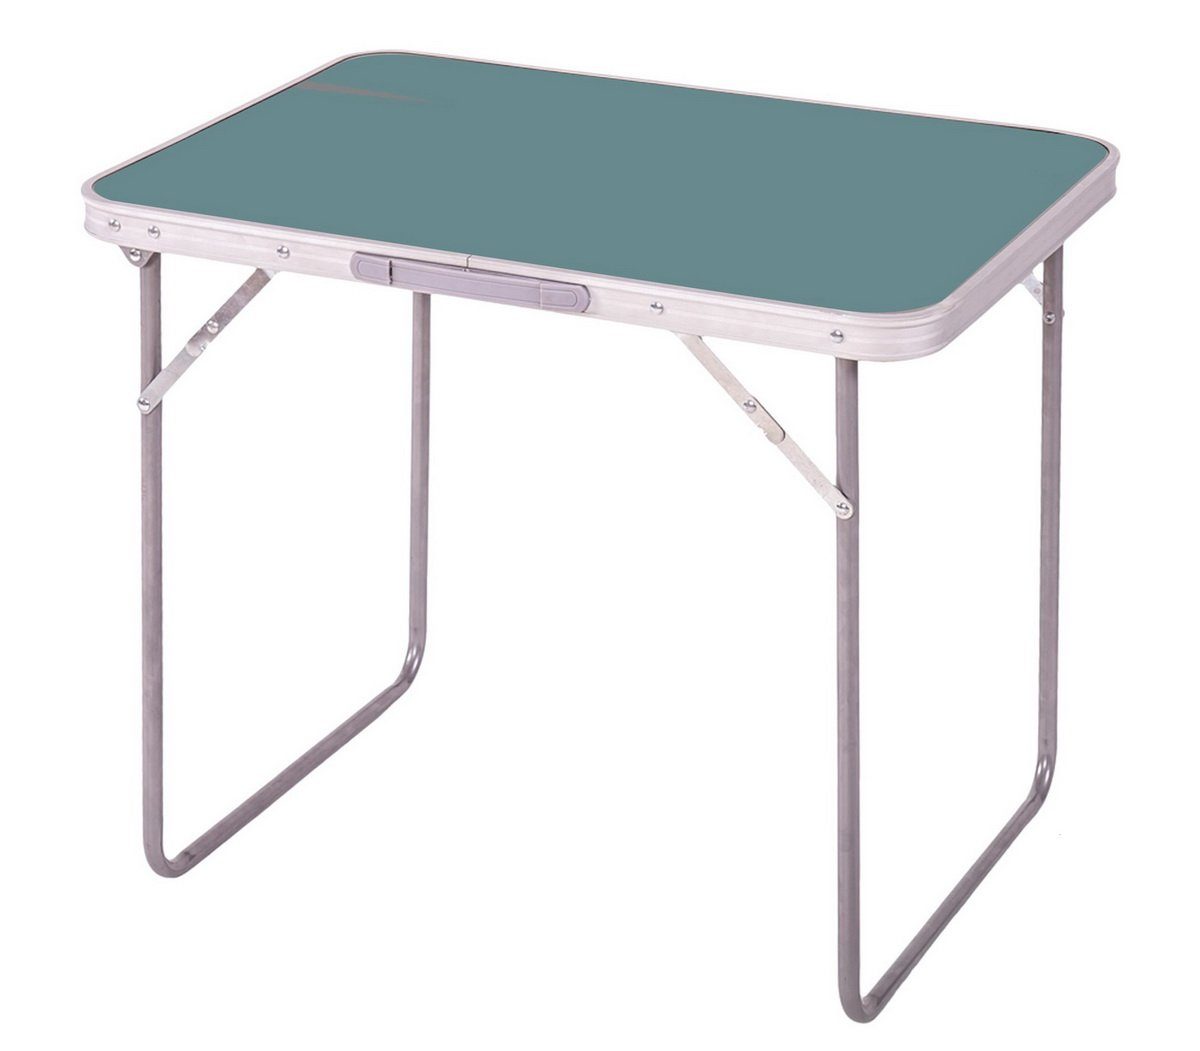 Sunnydays Campingtisch klappbarer Camping-Tisch Picknicktisch Partytisch blau-grün